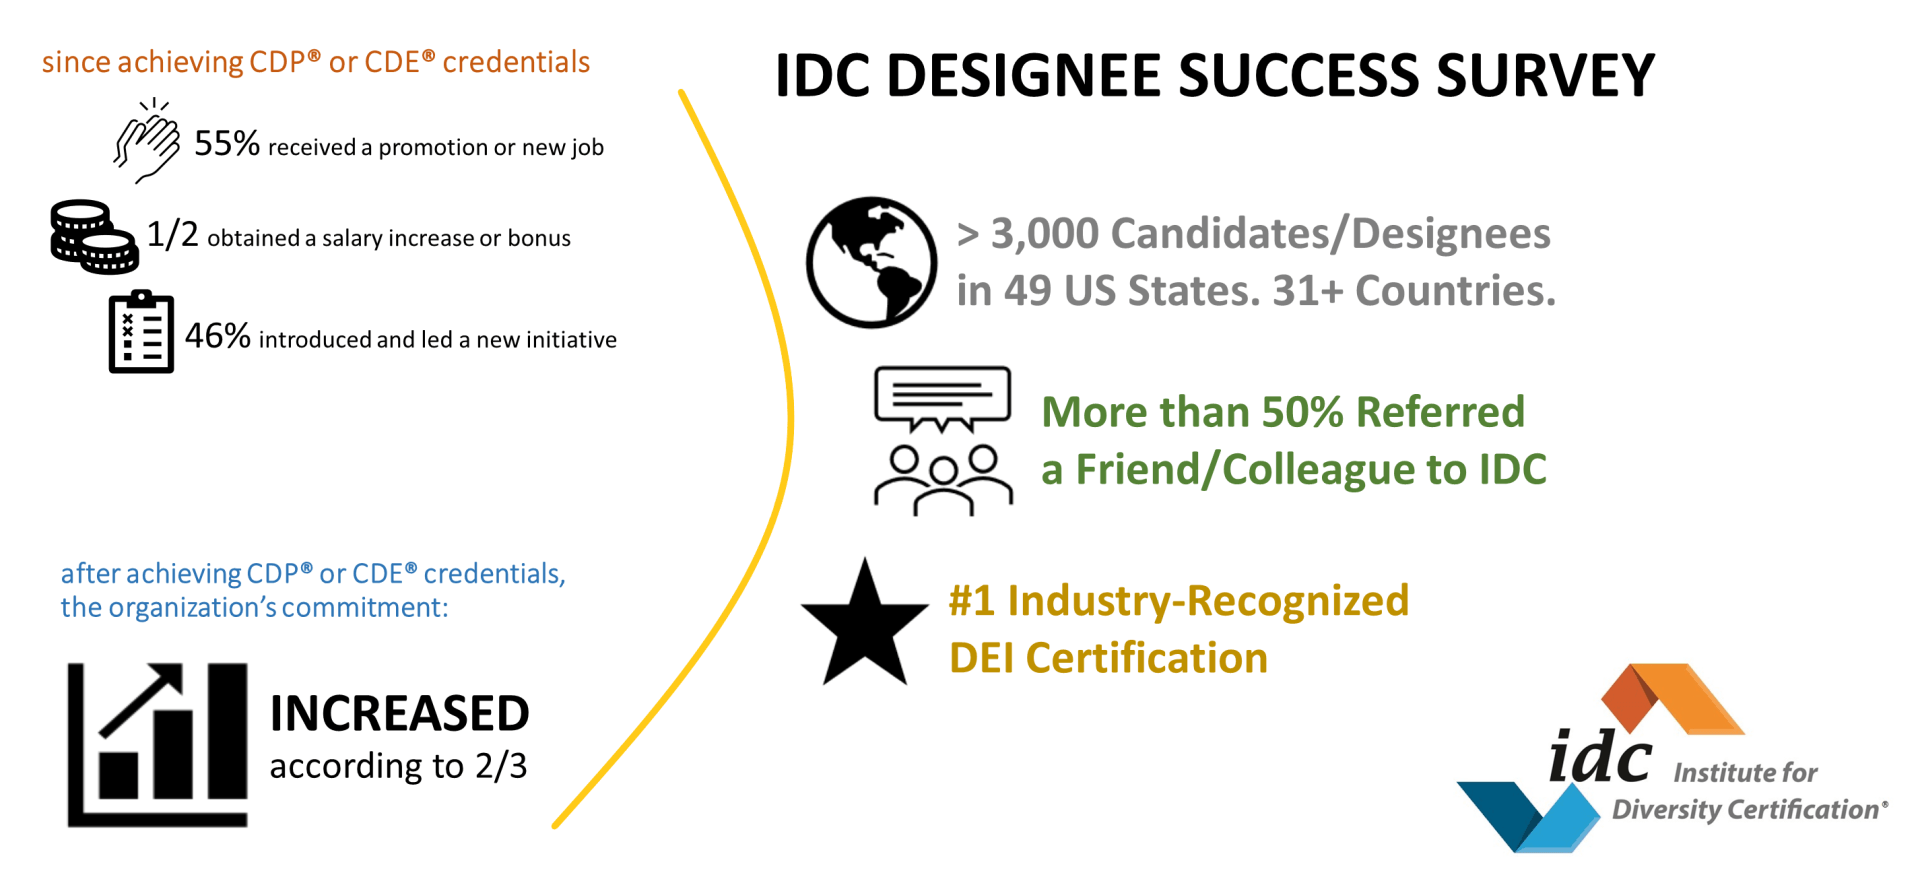 IDC designee success survey